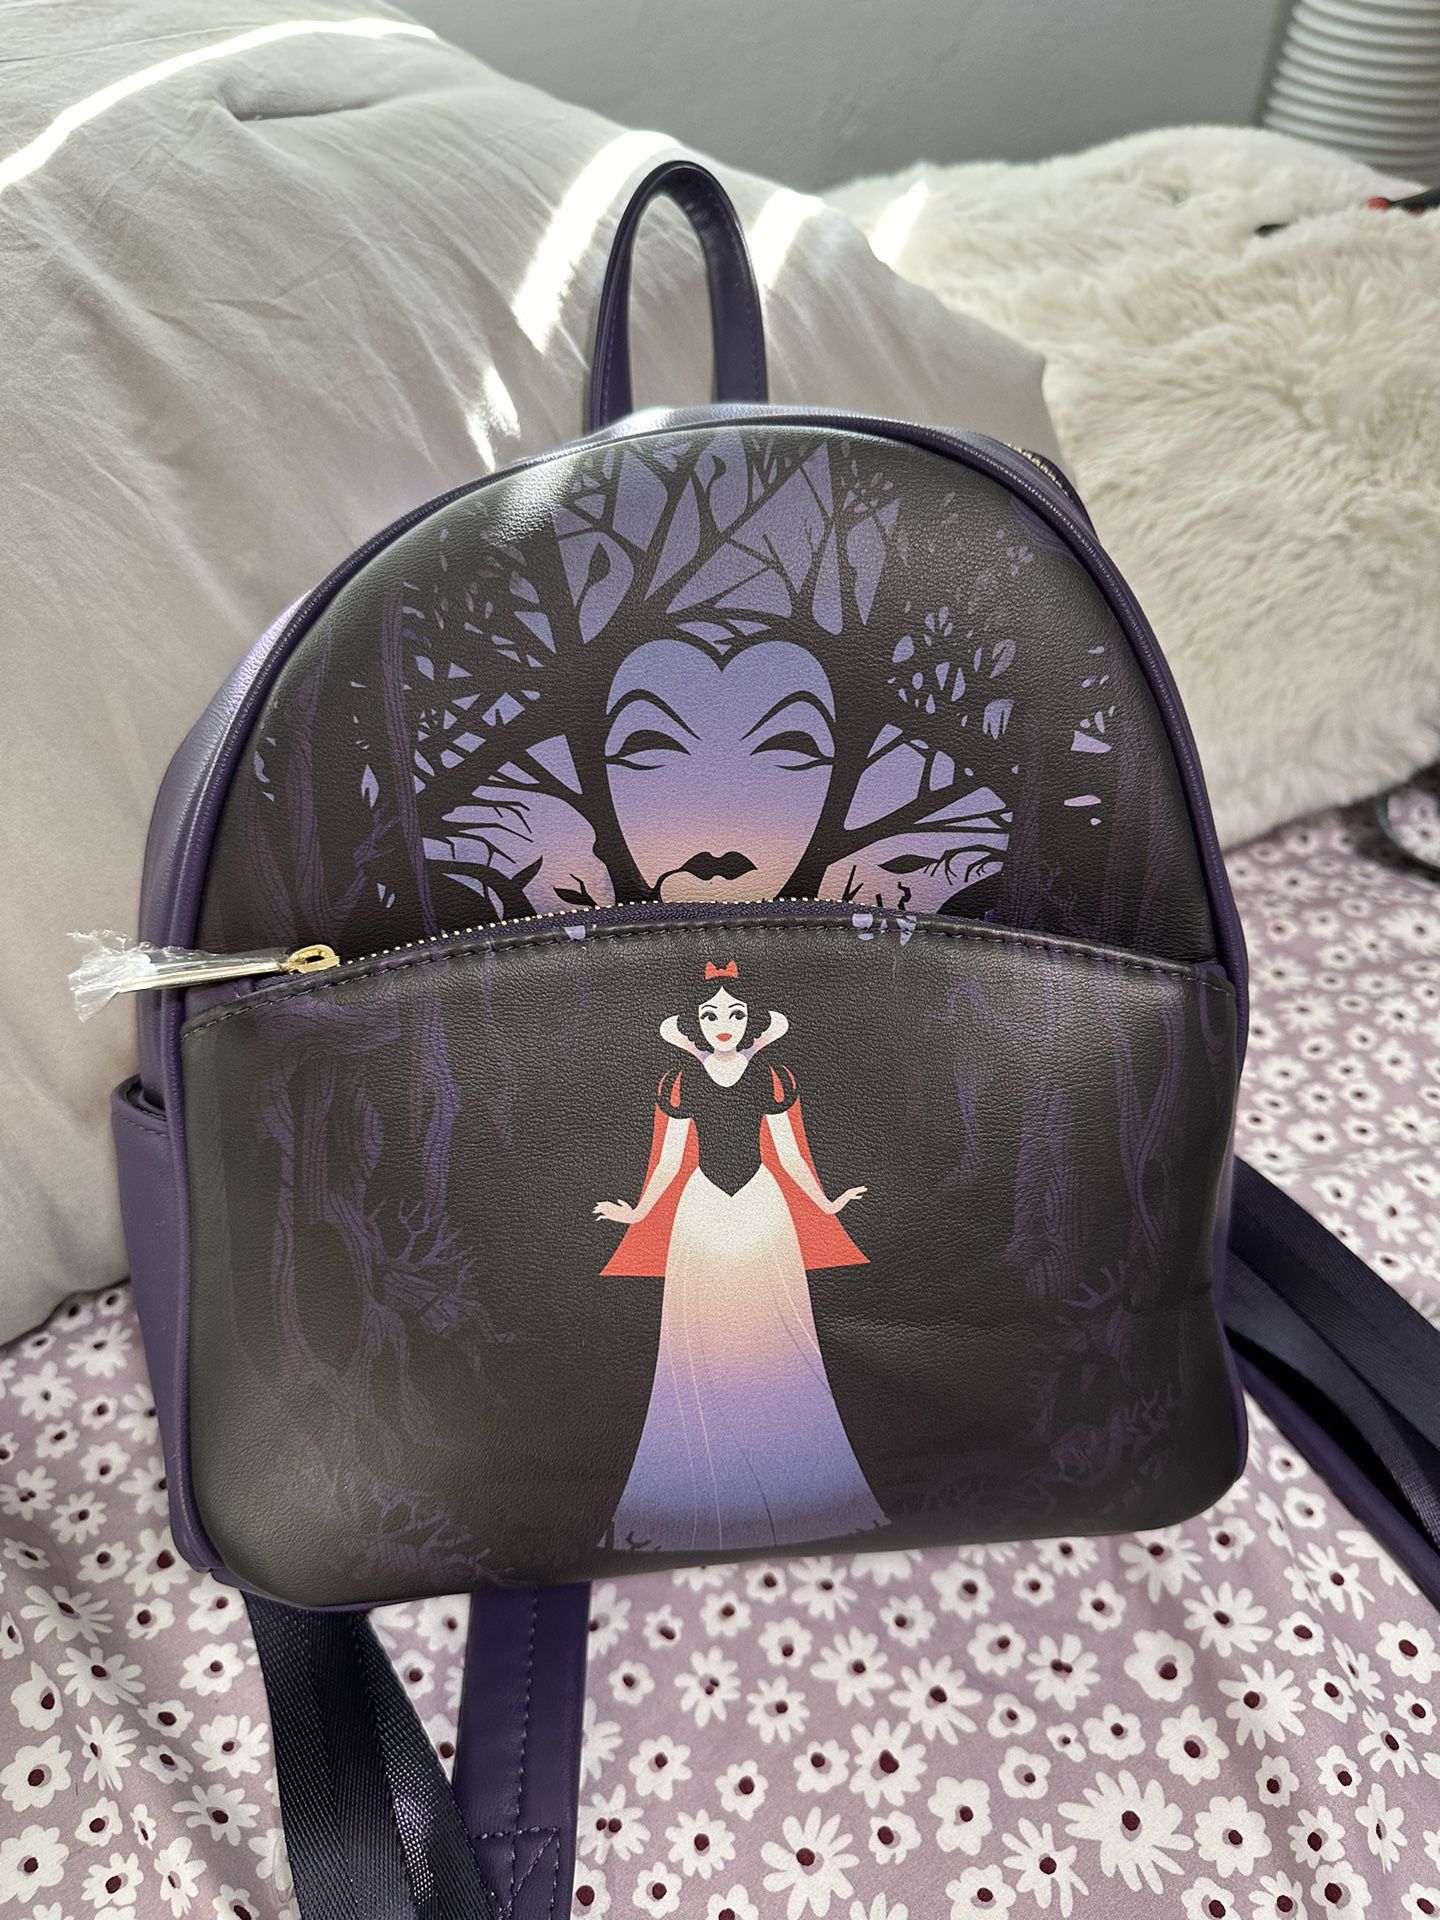 Snow White Disney Backpack 